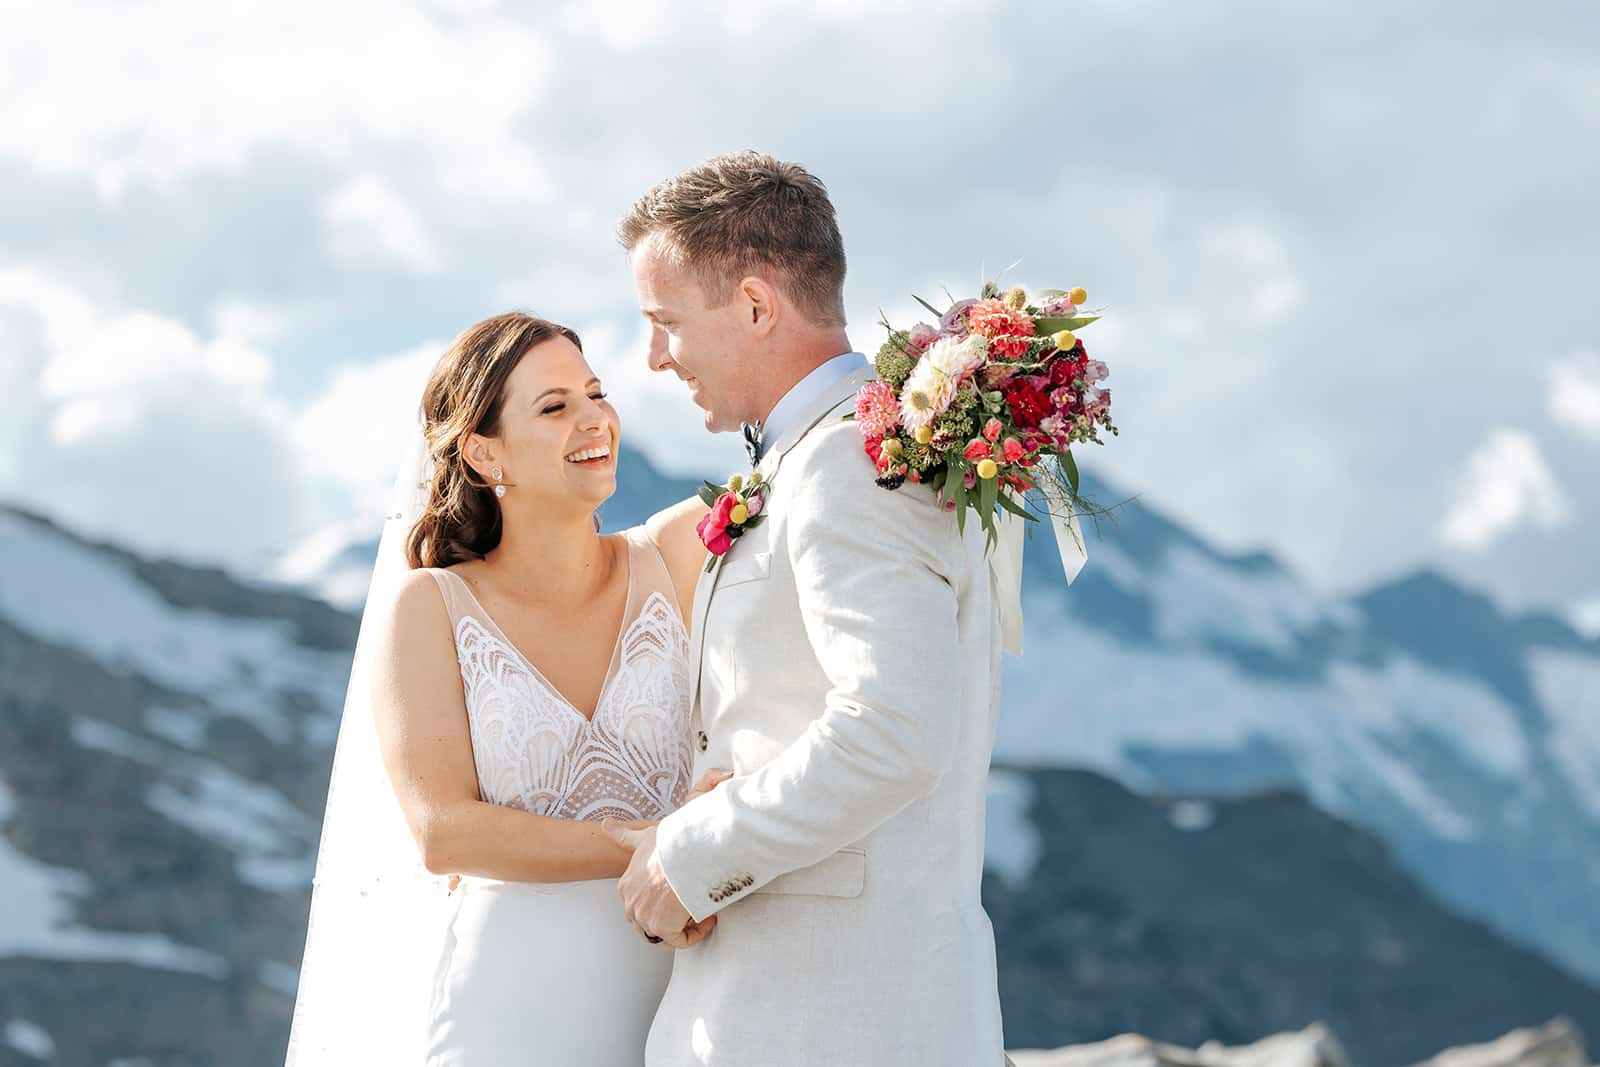 Heli Wedding photos on Isobel Glacier in Queenstown